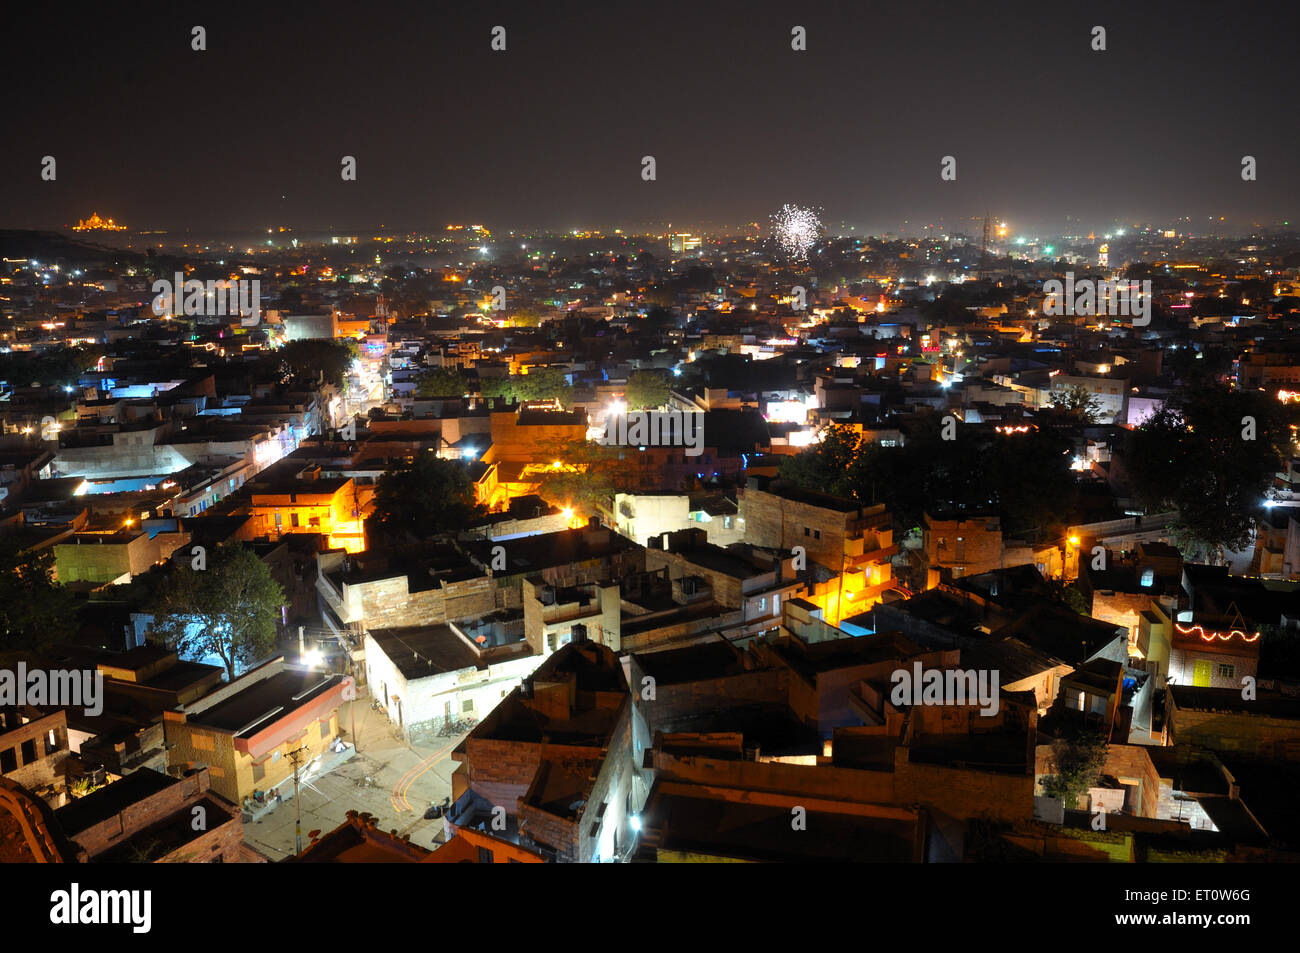 Vieille ville de Jodhpur en vue de nuit ; ; ; l'Inde Rajasthan Jodhpur Banque D'Images